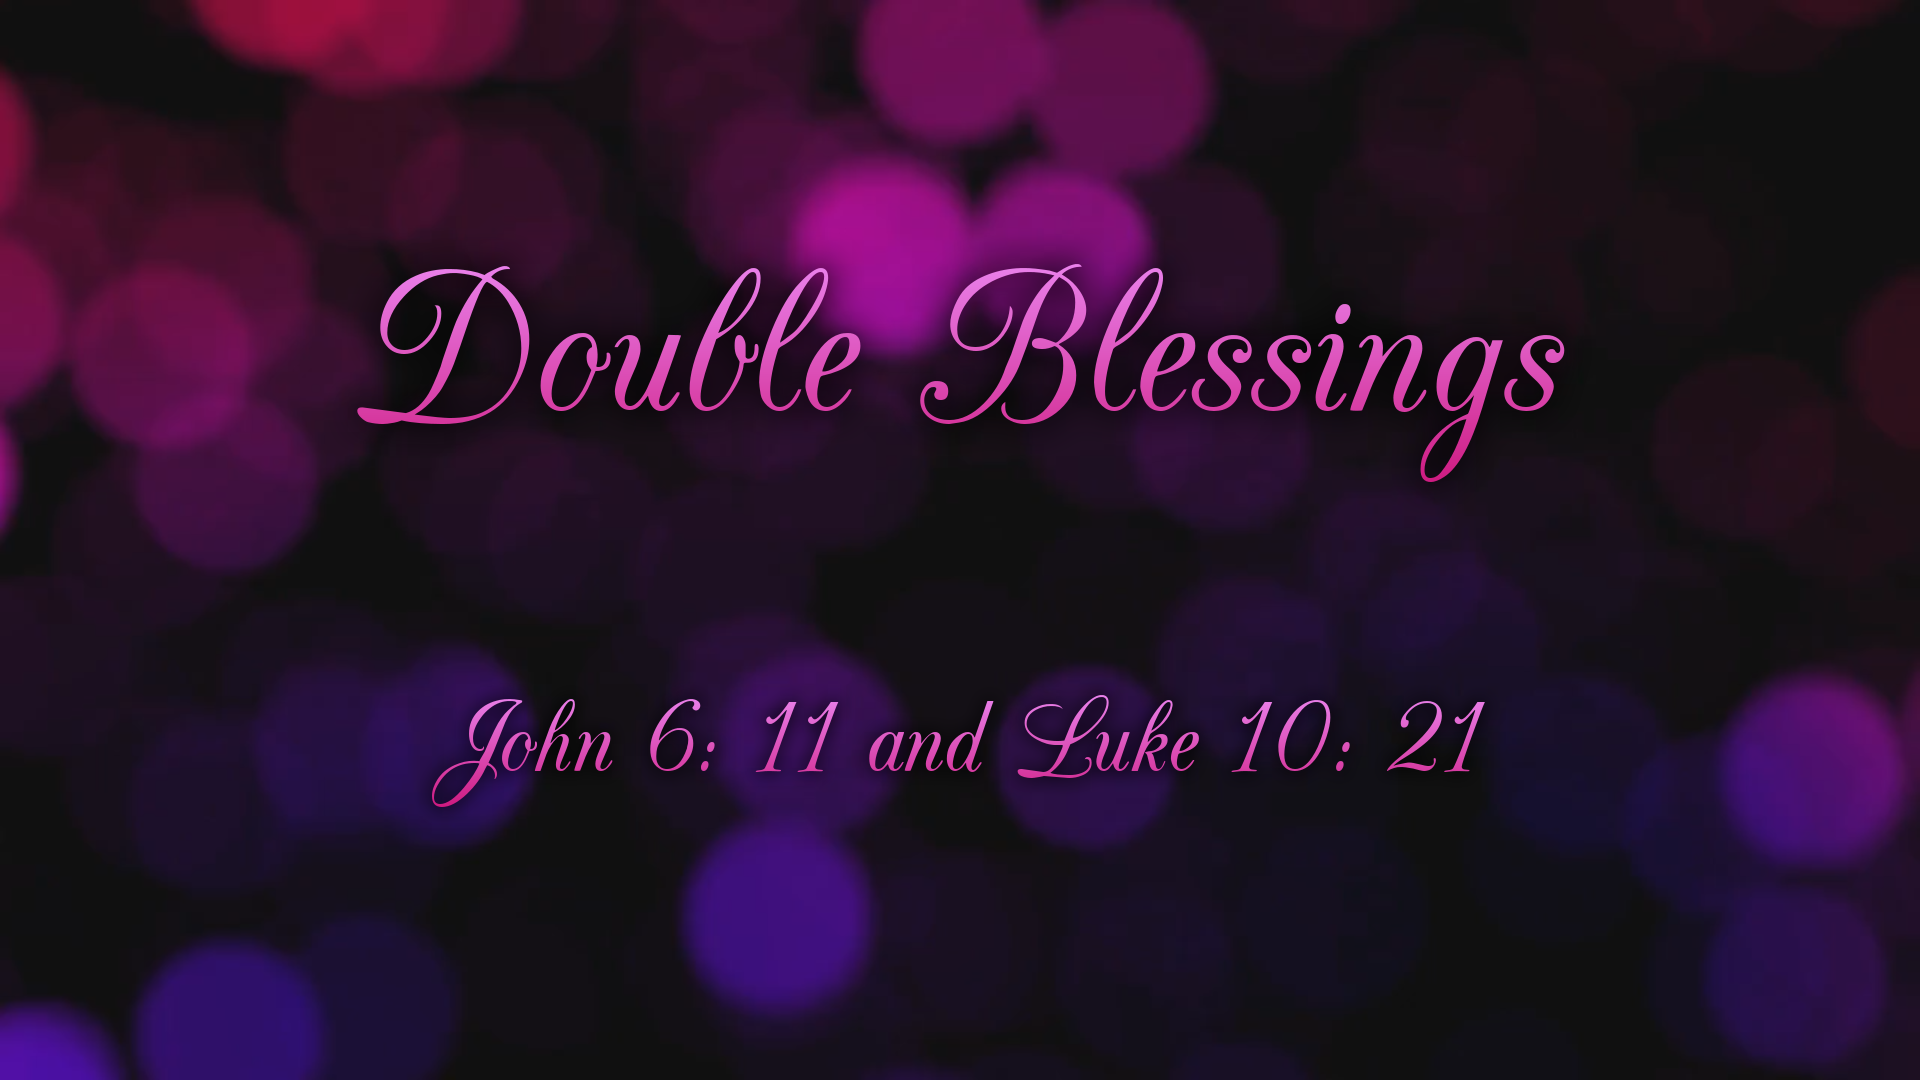 Oct 4, 2020 - Double Blessings (Video) - John 6:11 & Luke 10:21